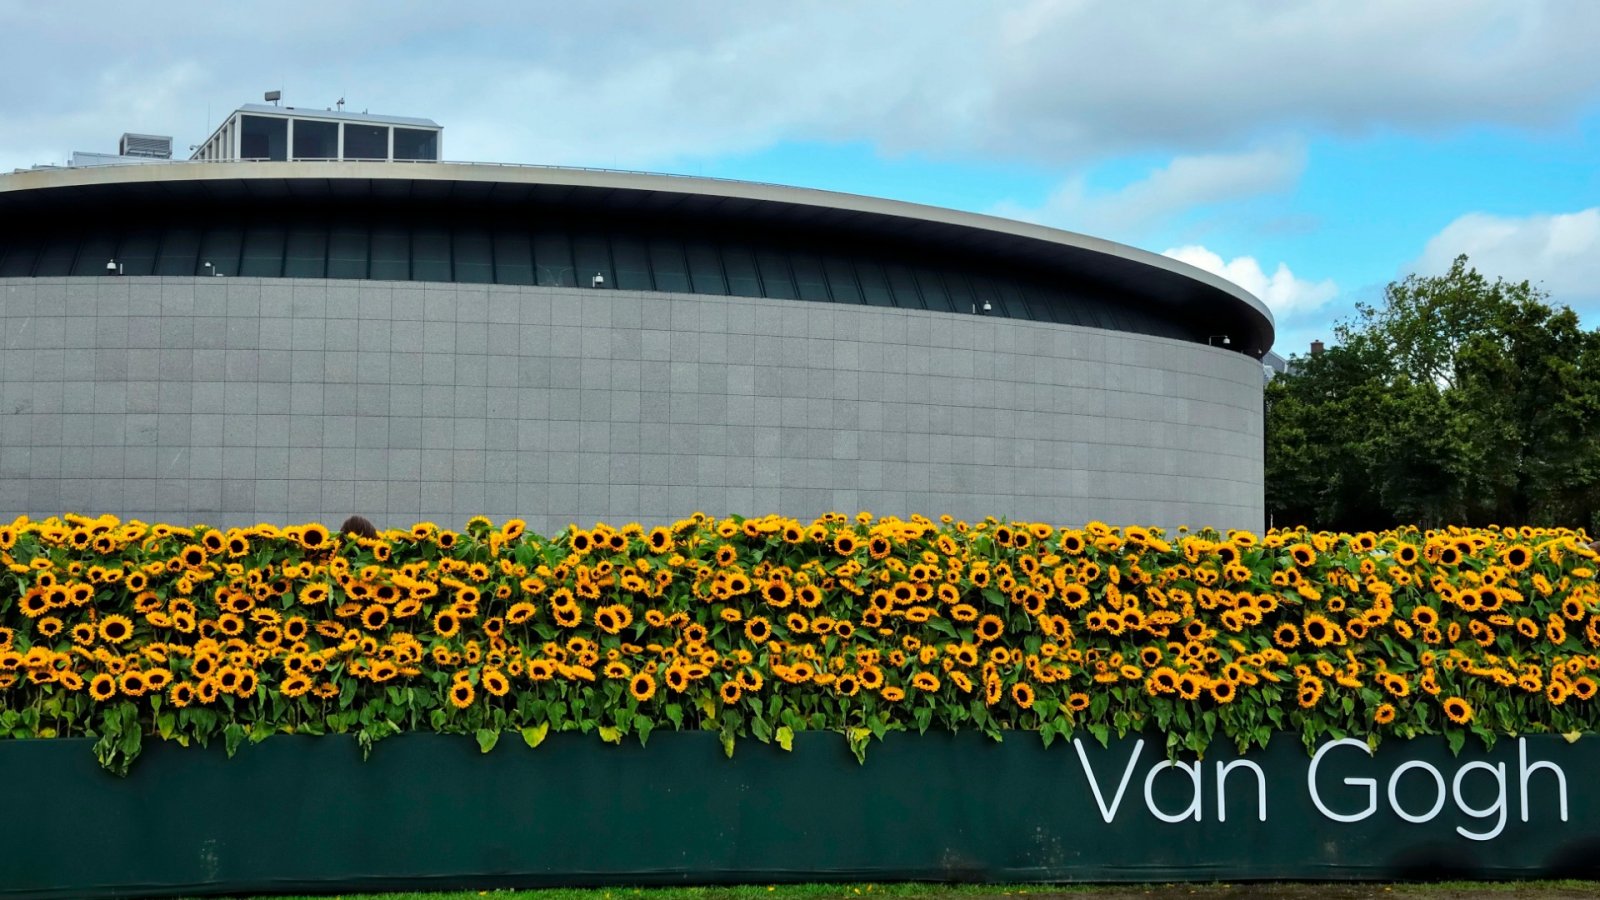 Girasoli e storia: l'arte di Van Gogh rubata dai nazisti potrebbe valere 30 milioni di dollari